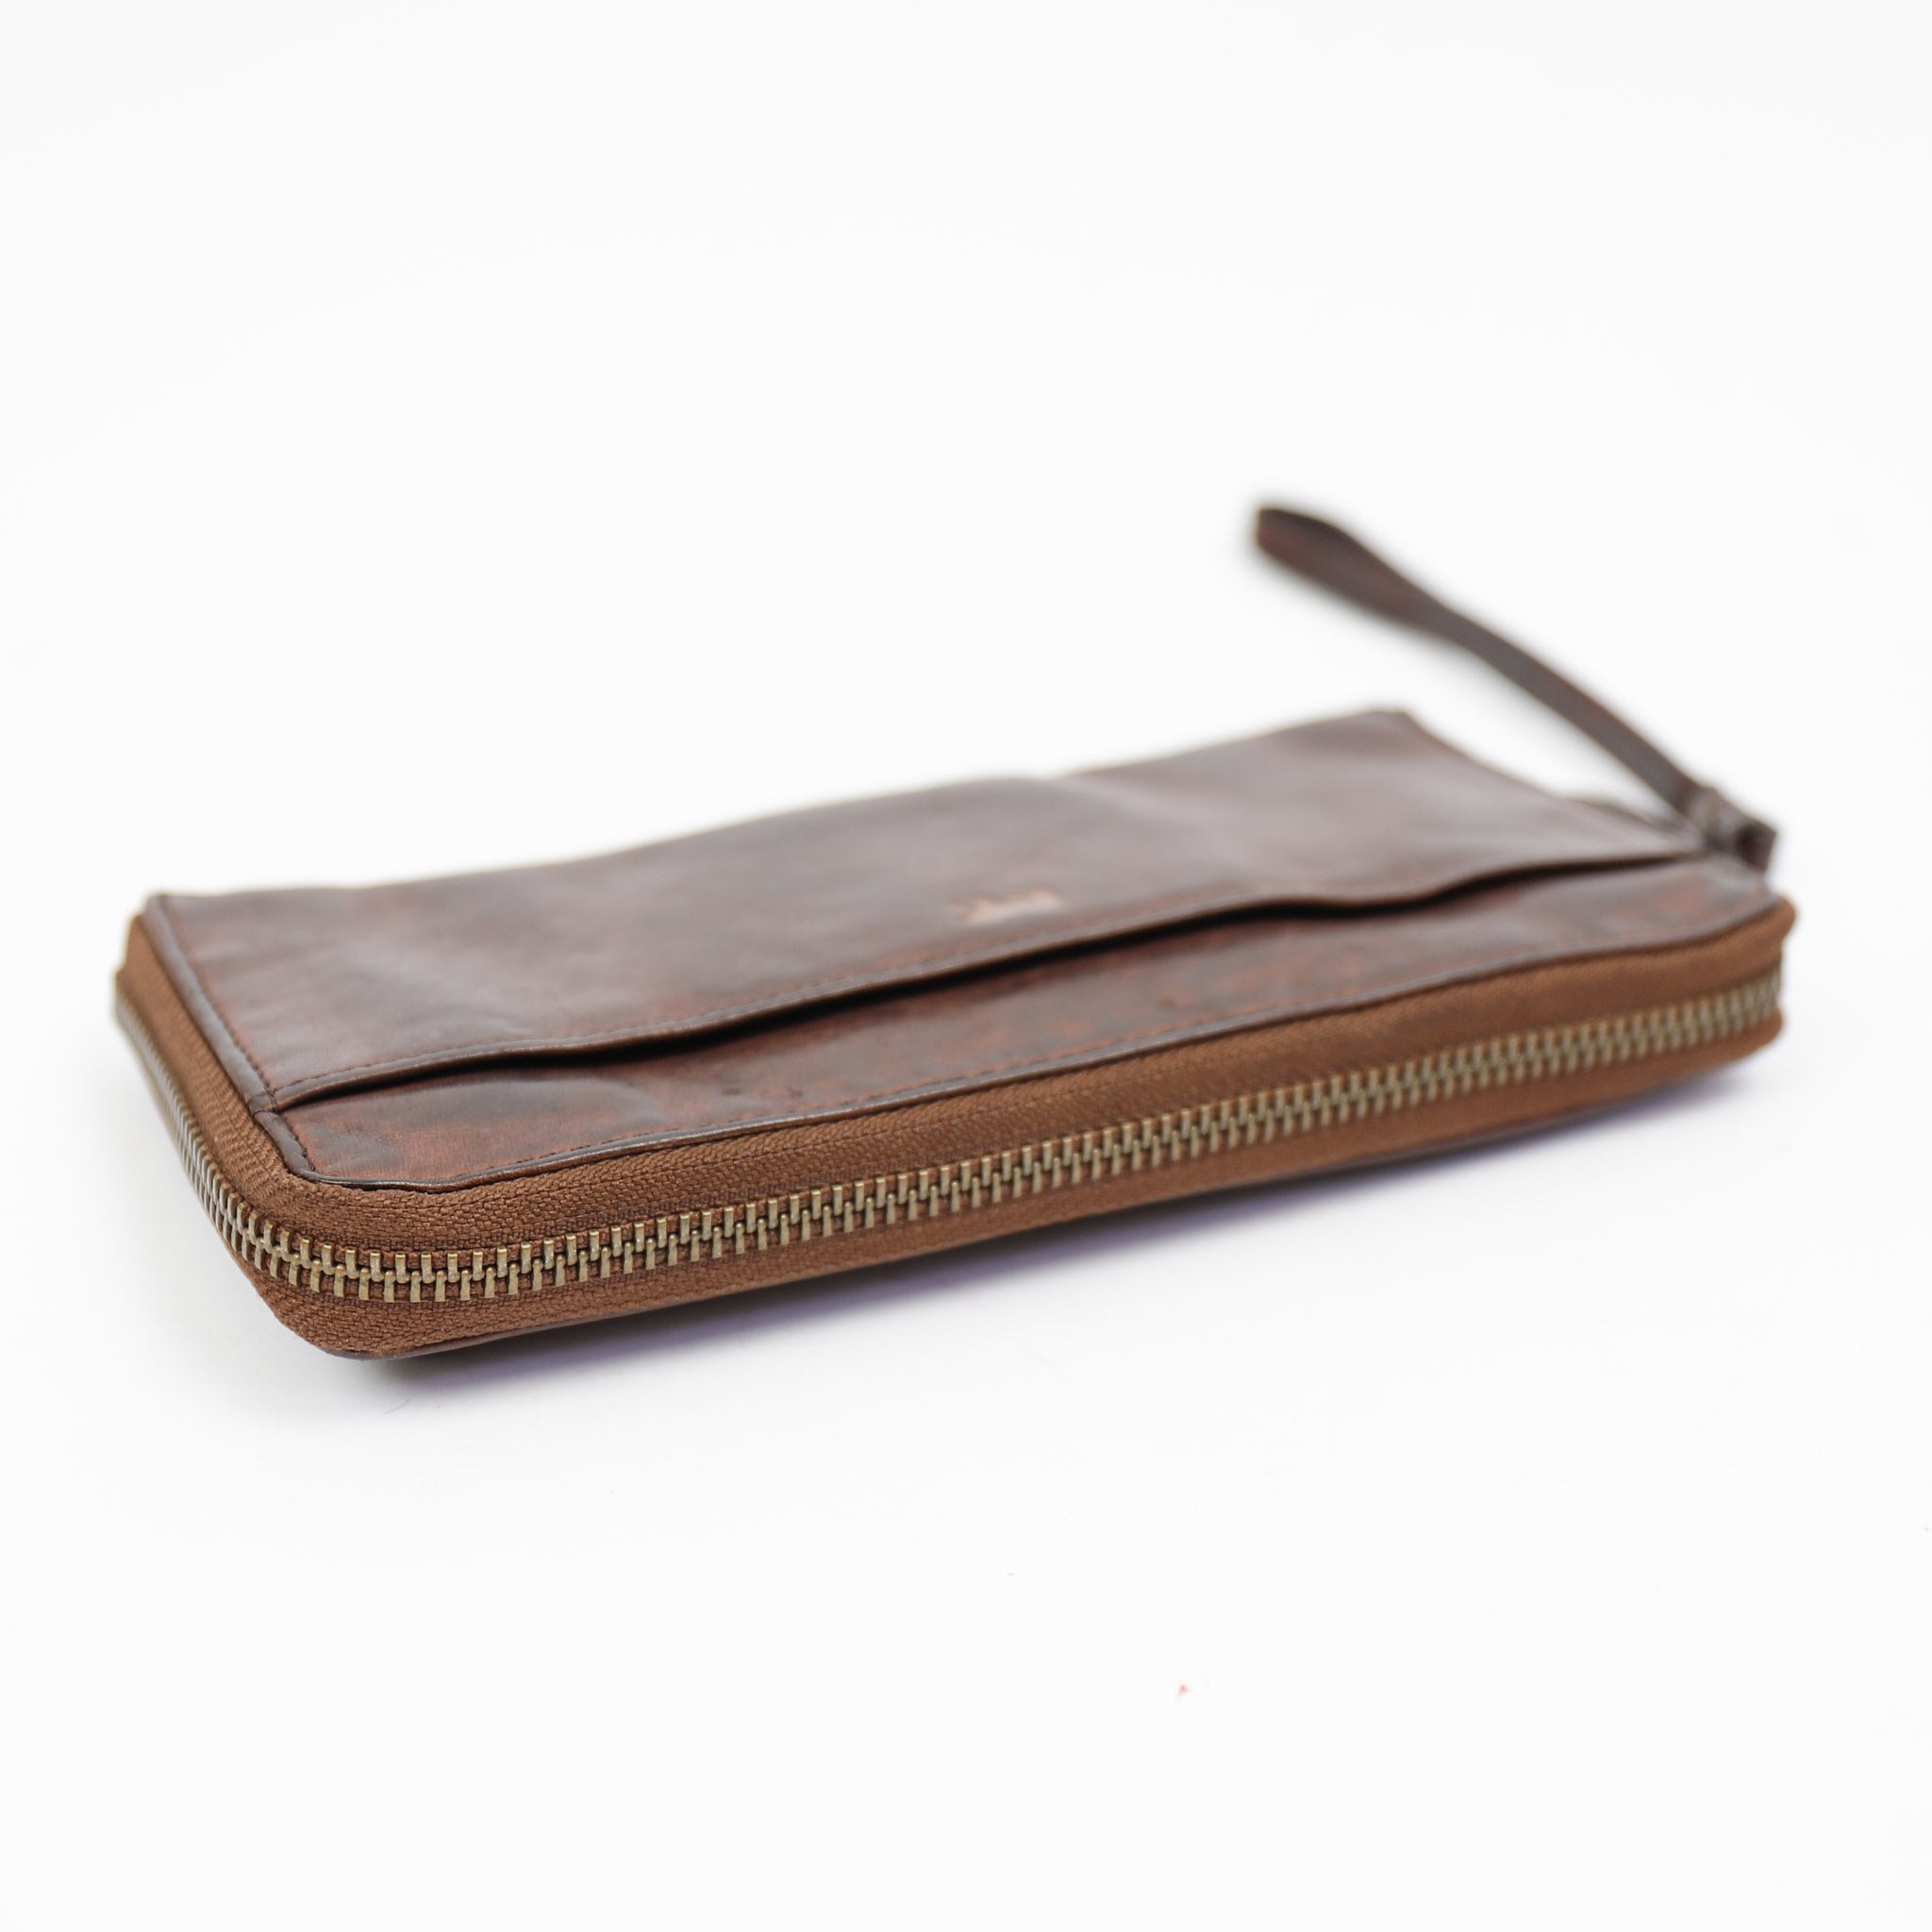 Zipper wallet 'Sofie' dark brown - CL 15882